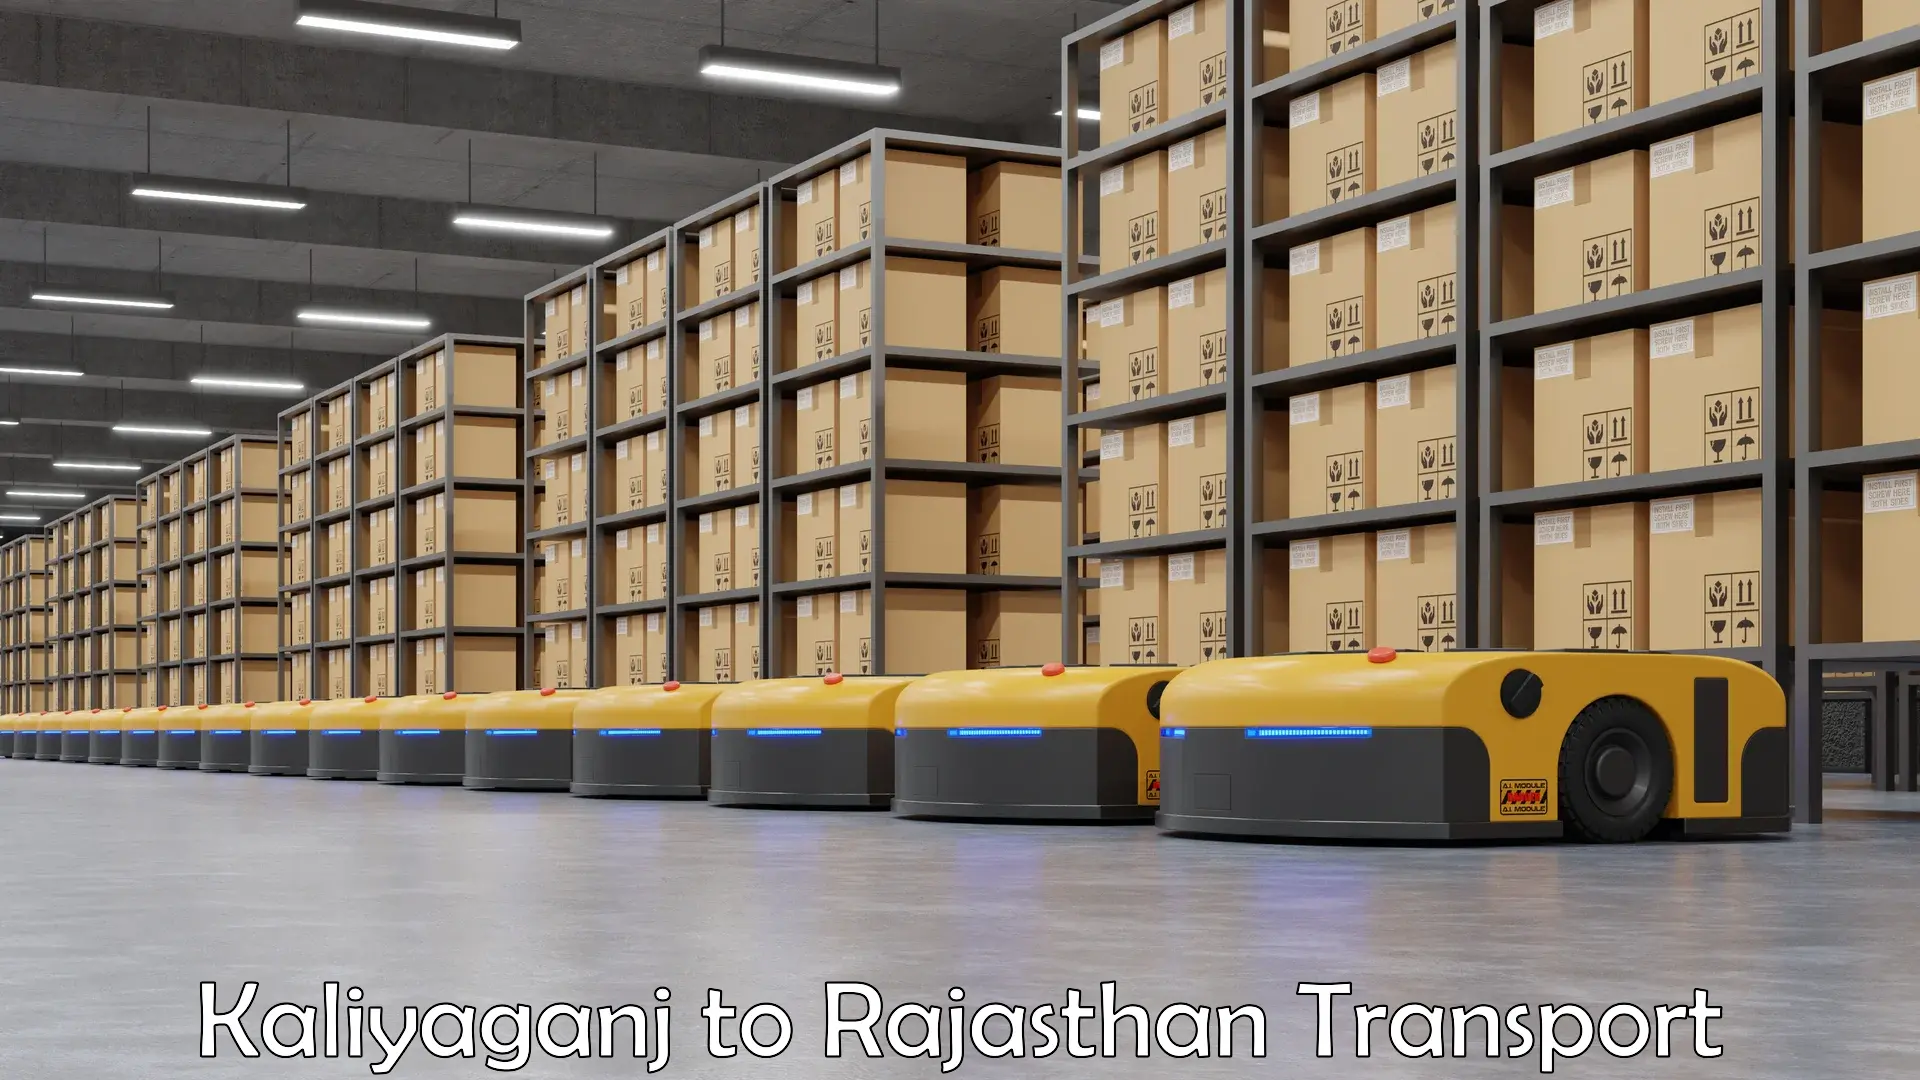 Container transport service Kaliyaganj to IIT Jodhpur